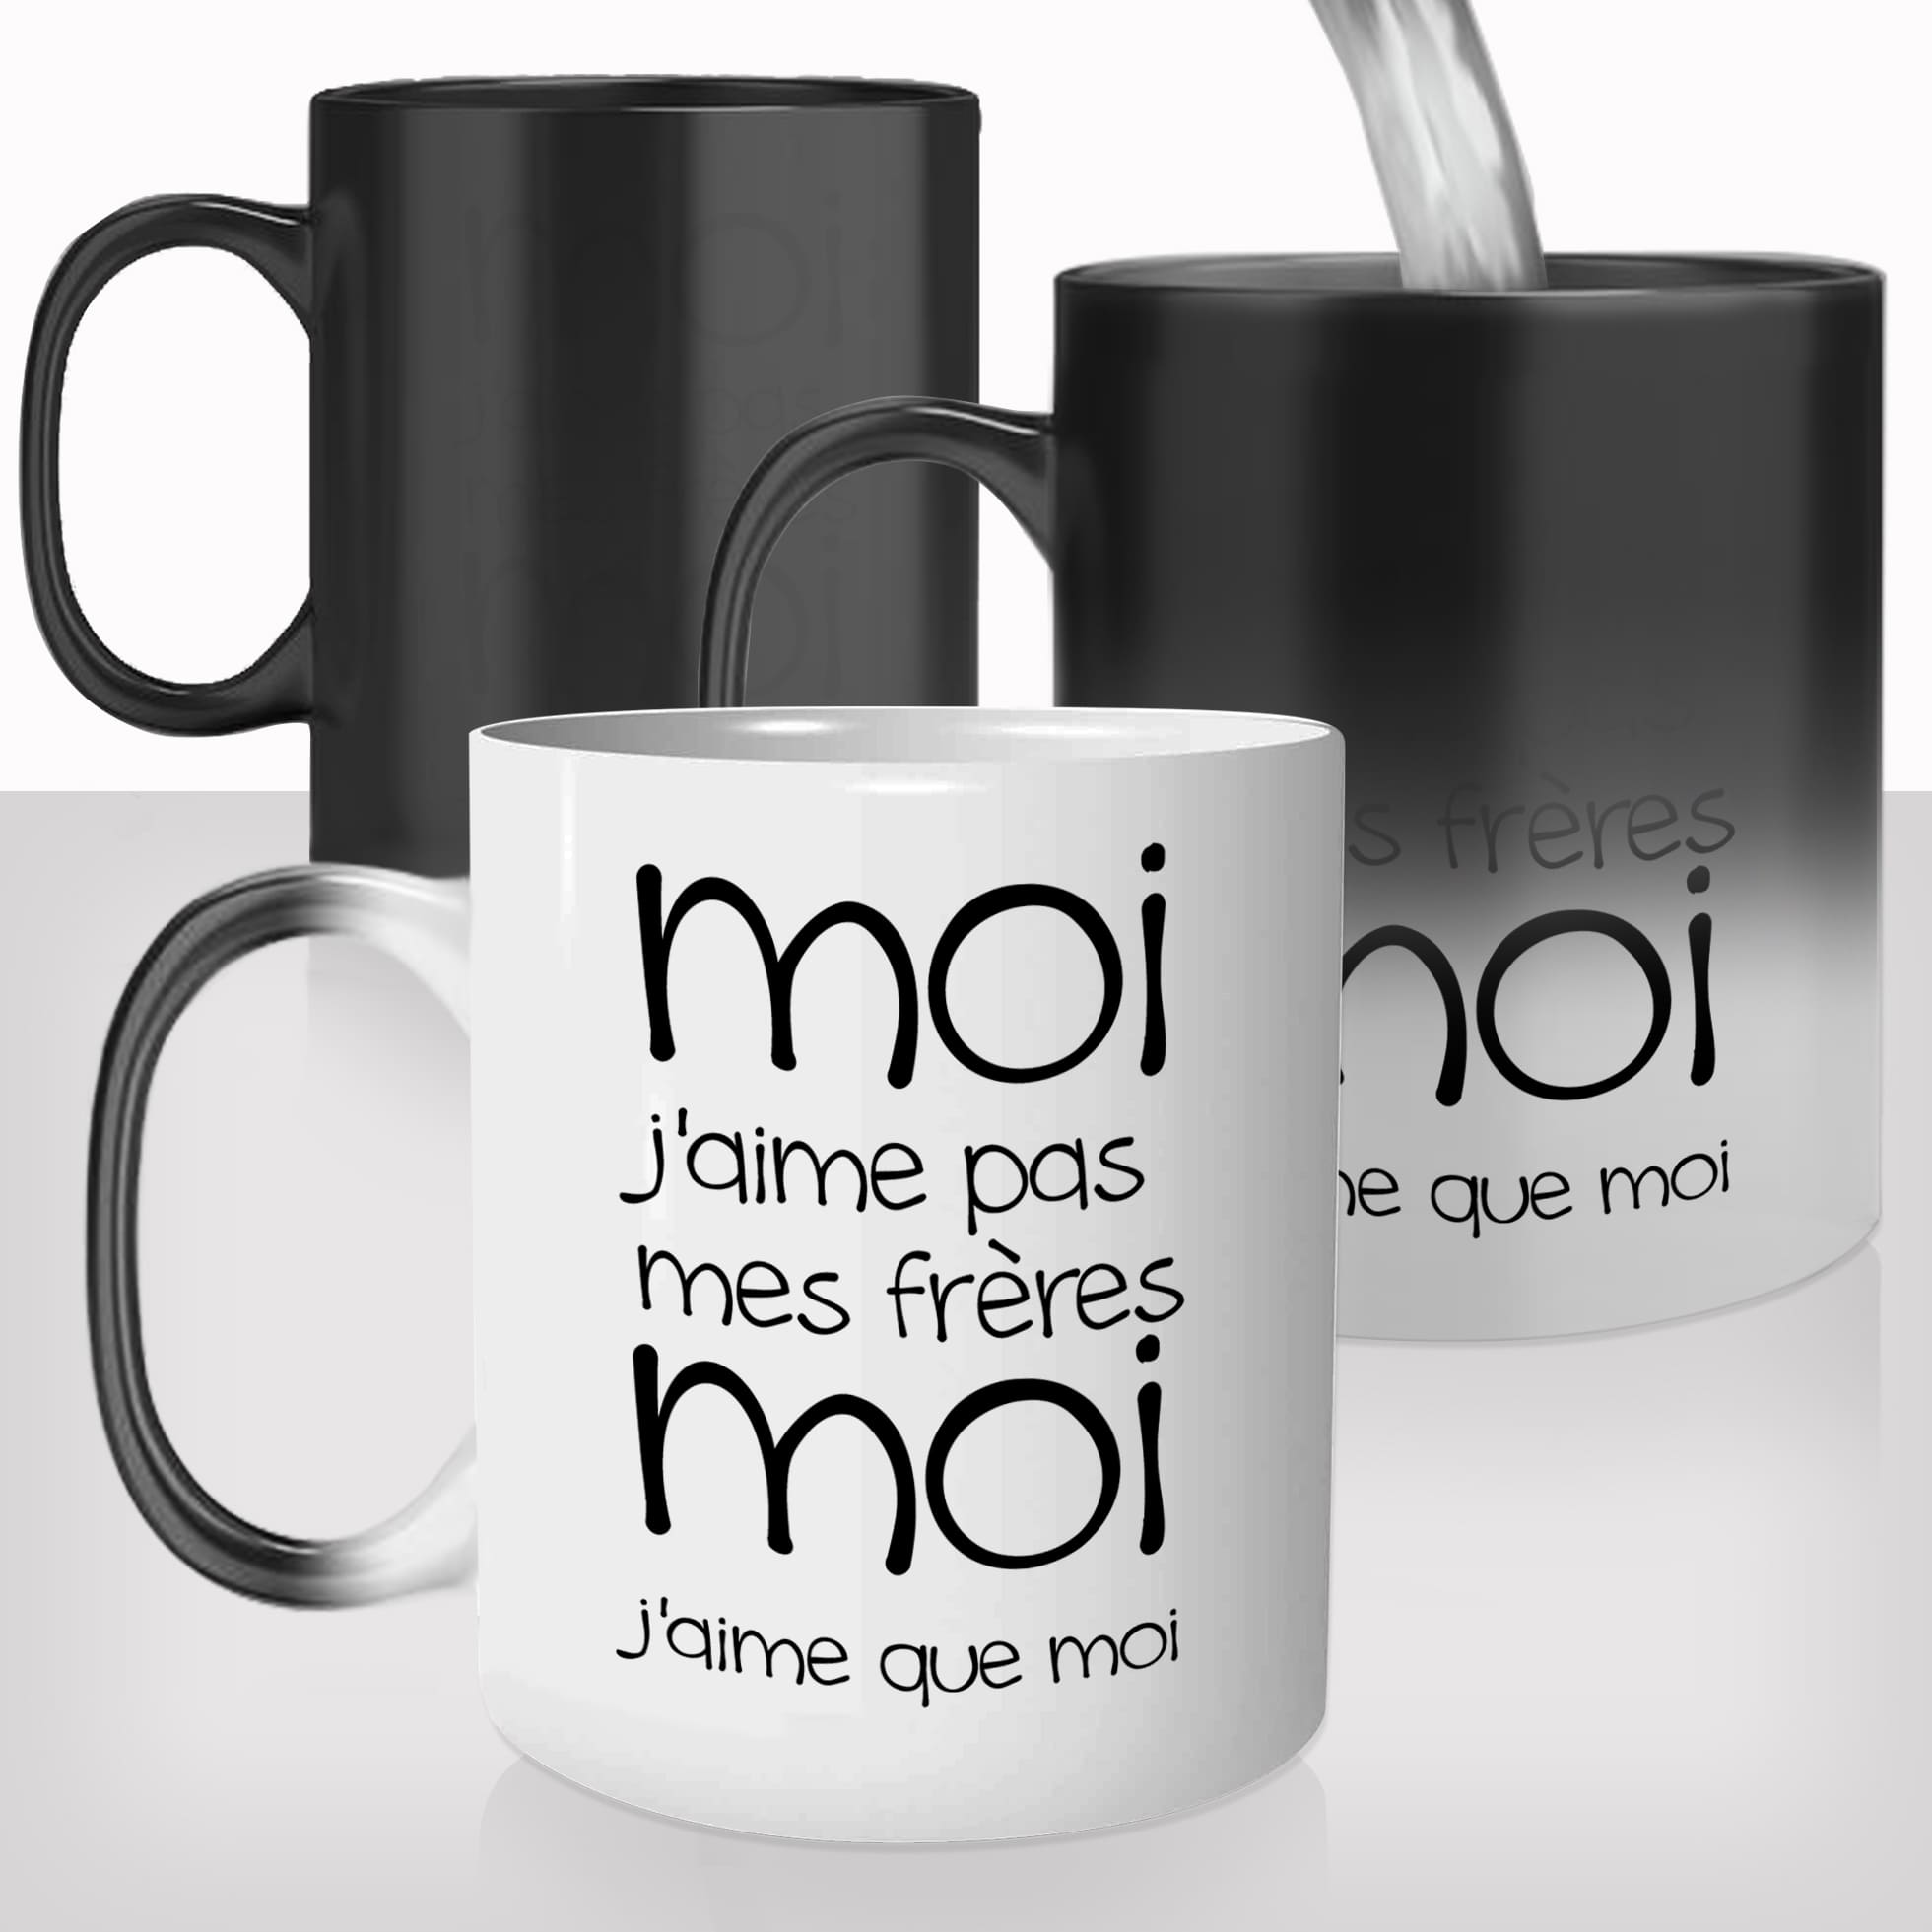 mug-magique-personnalisable-thermoreactif-tasse-thermique-malcolm-série-dewey-moi-j'aime-que-moi-personnalisé-fun-idée-cadeau-original